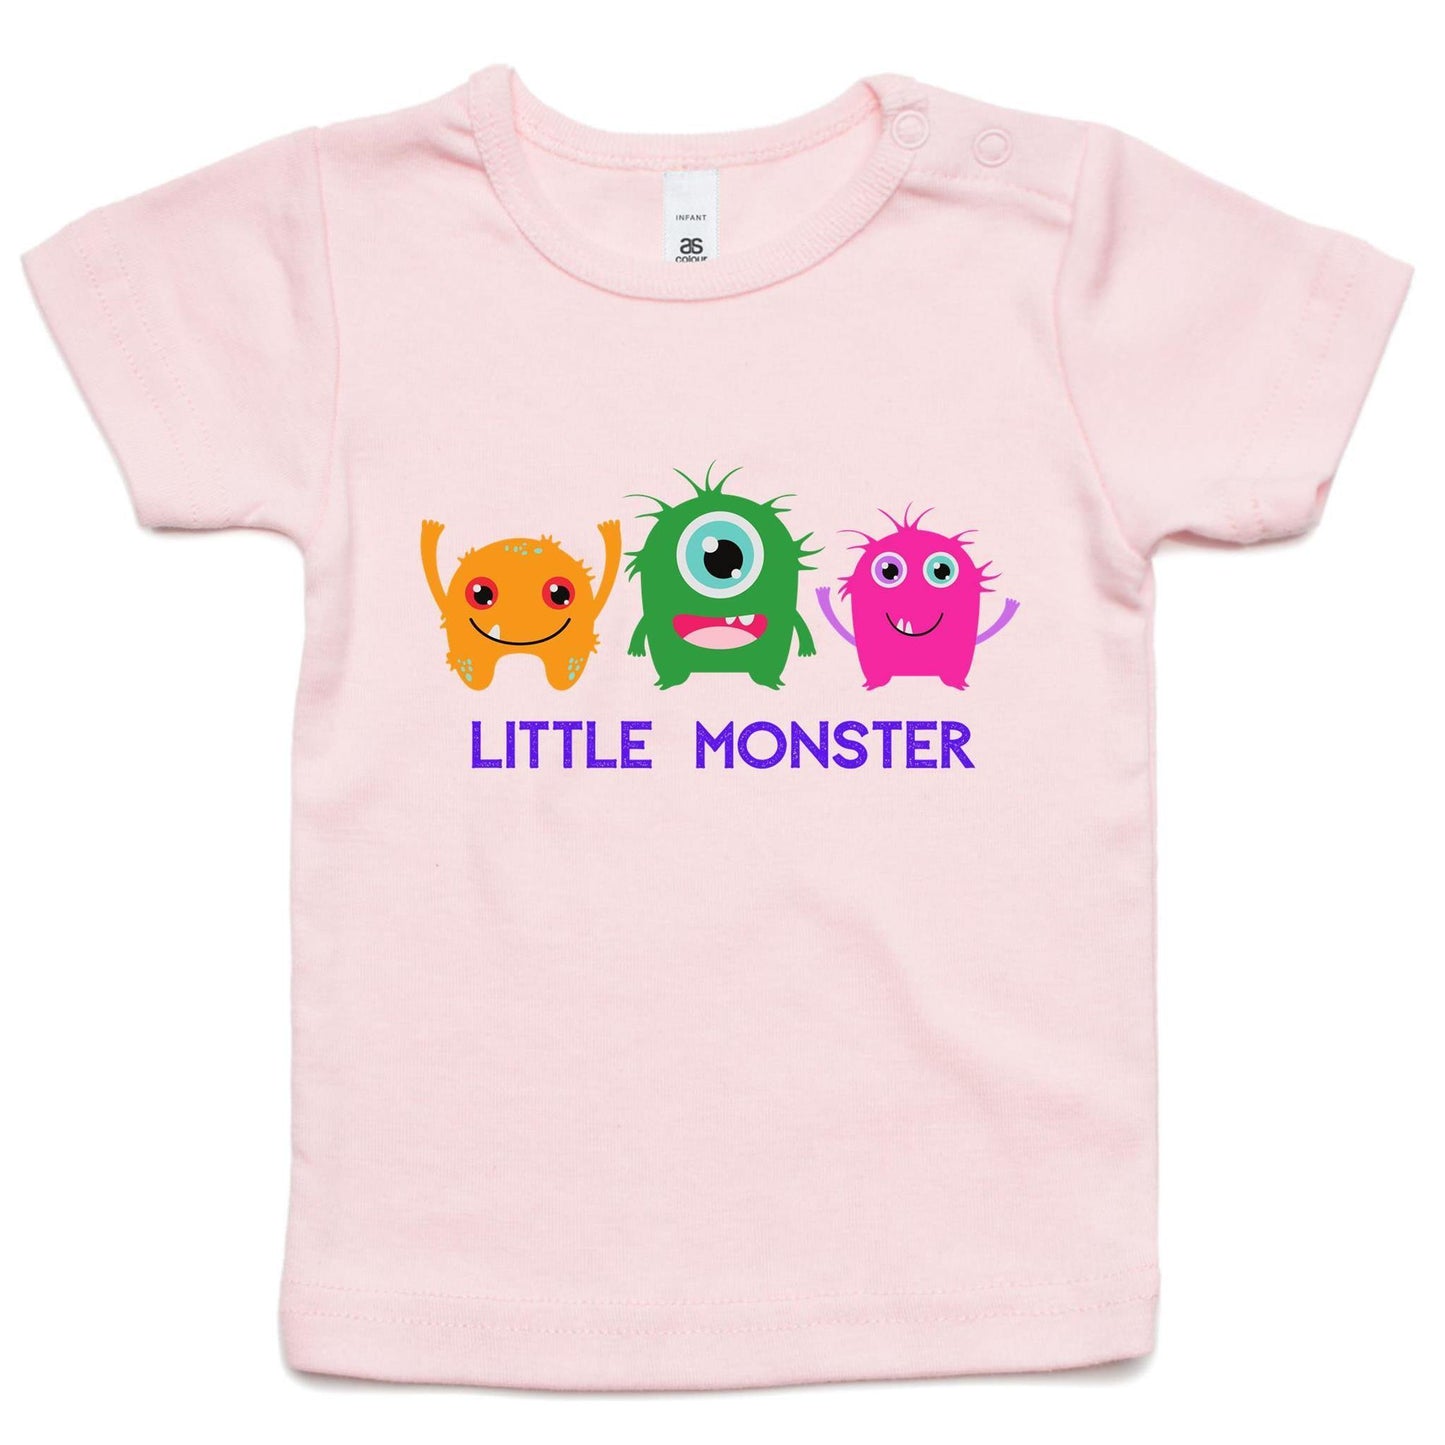 Little Monster - Baby T-shirt Pink Baby T-shirt kids